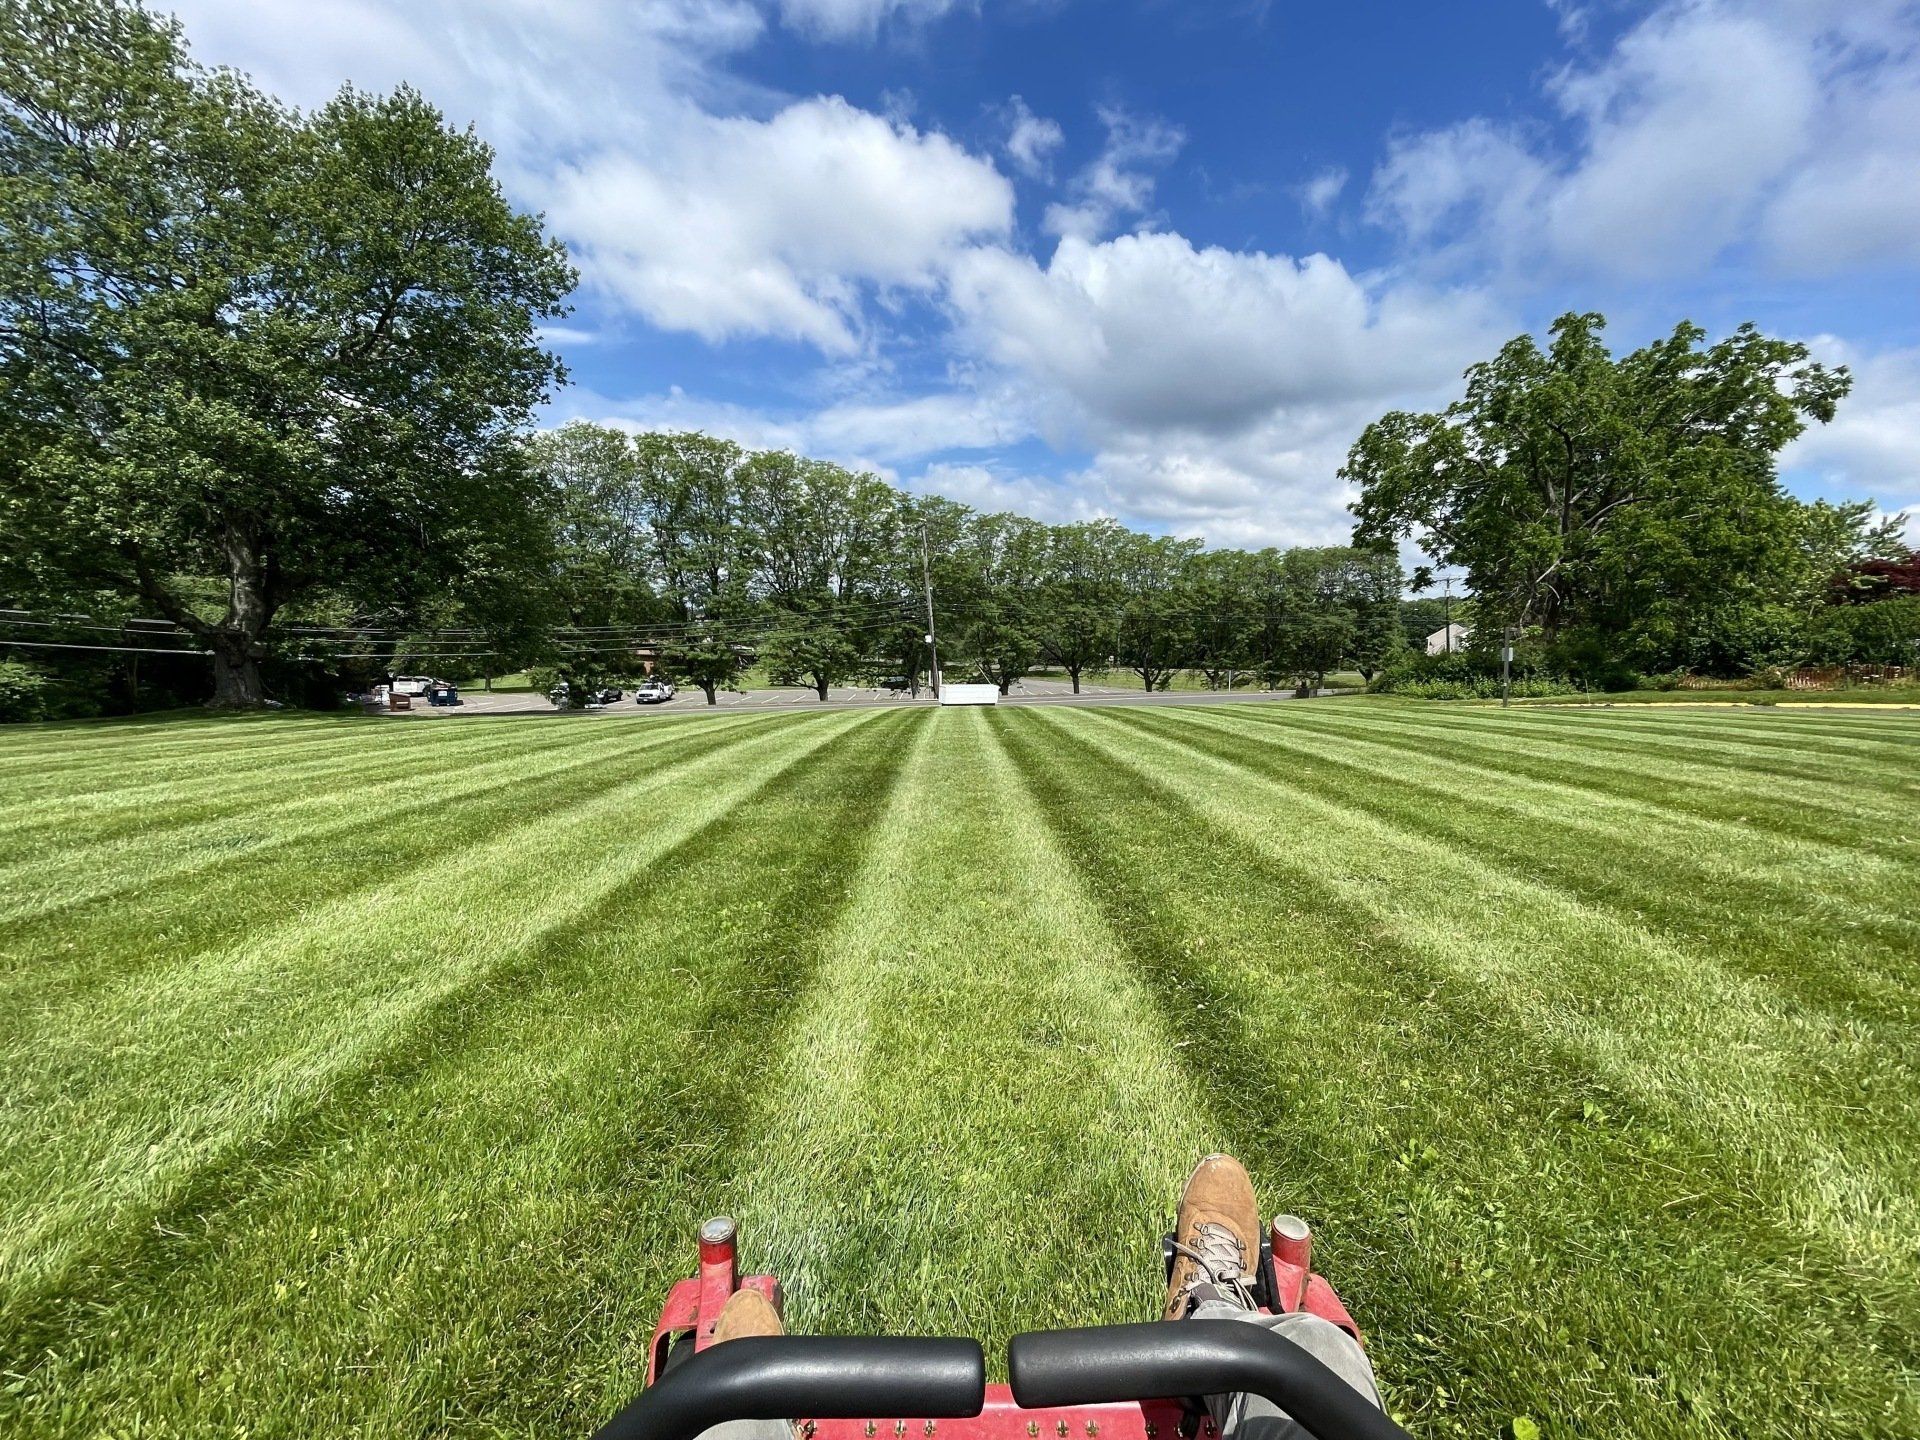 Commercial Lawn Care & Landscape Service West Hartford & Newington CT Connecticut